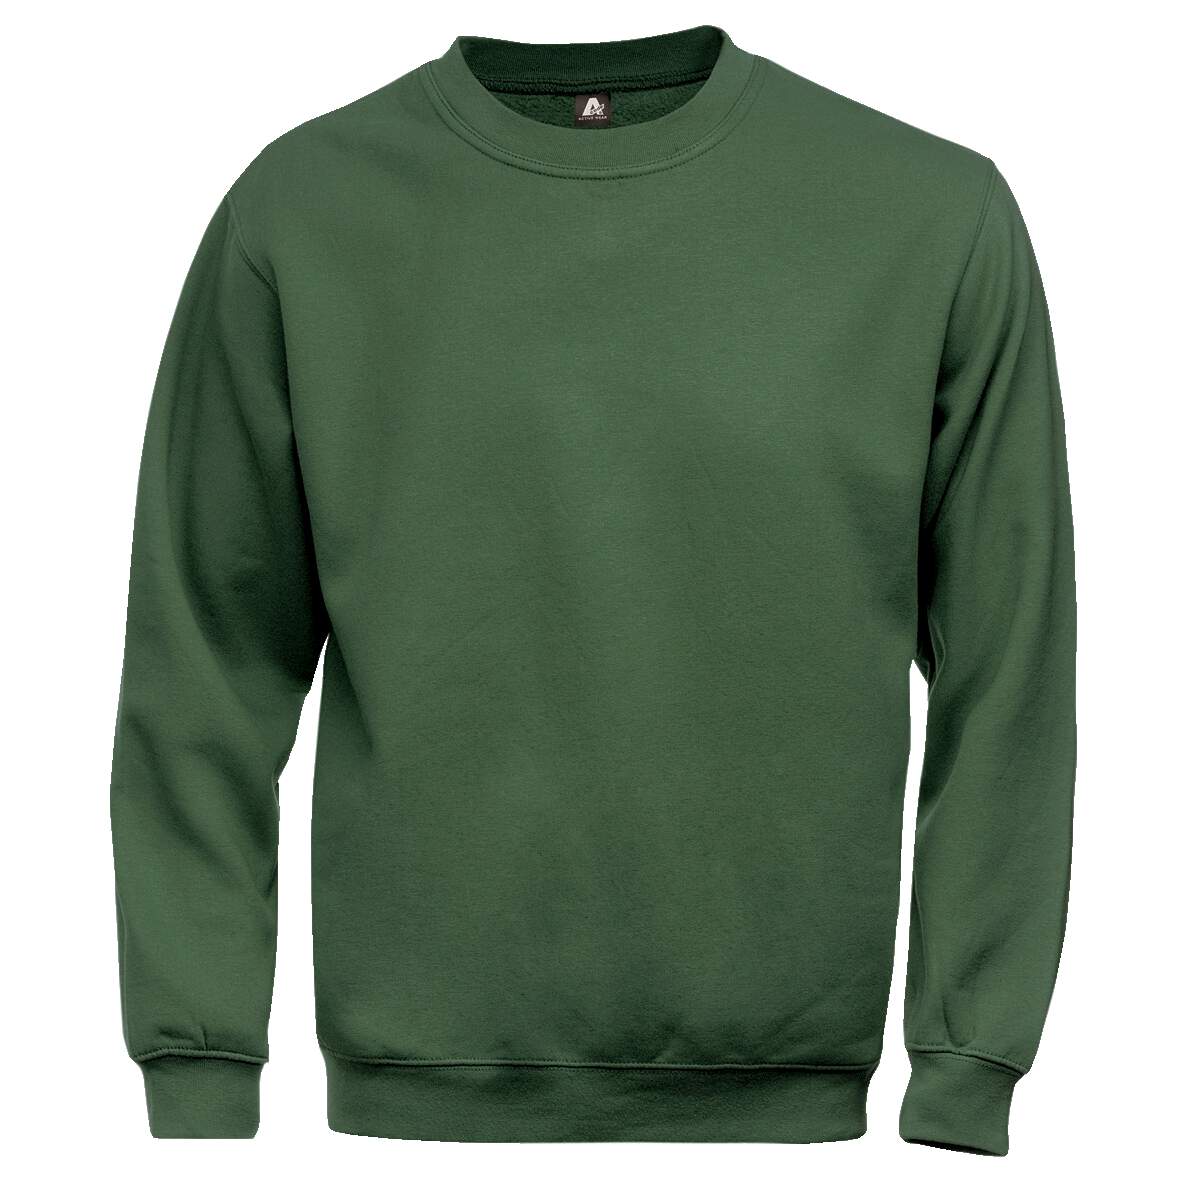 1181257 - Sweatshirt grün 100225